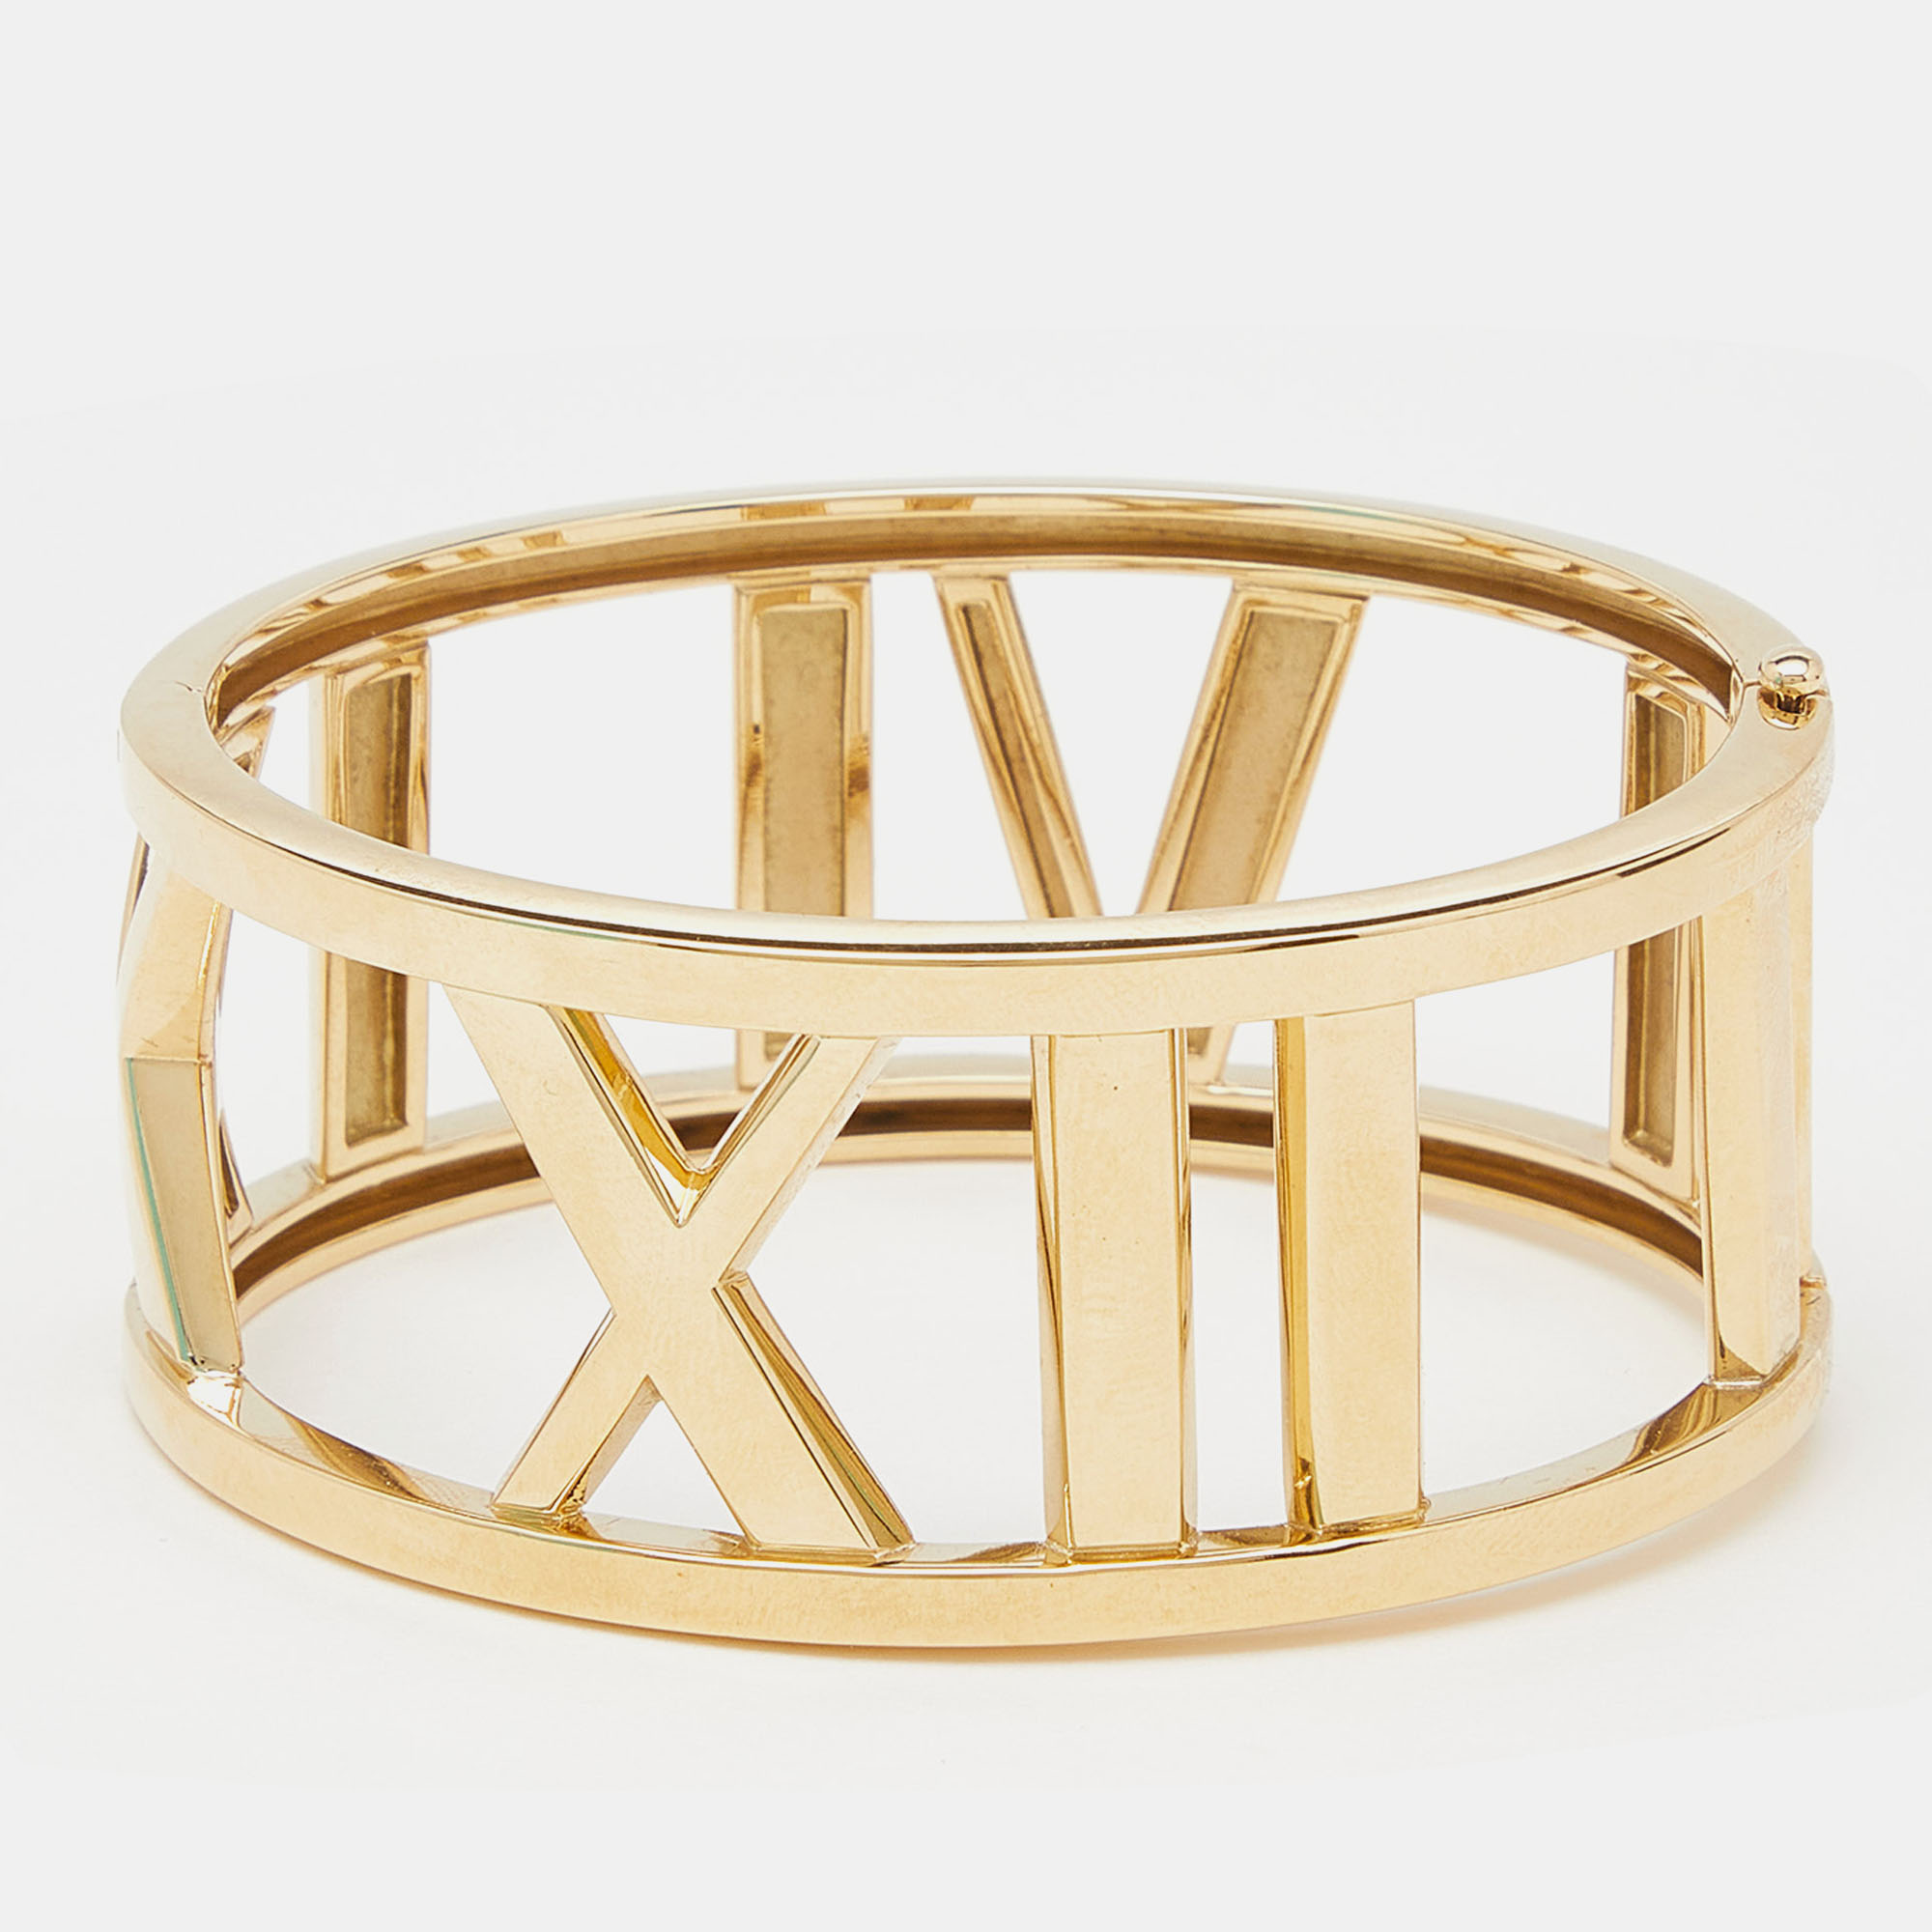 Tiffany & co. open atlas 18k yellow gold wide bracelet